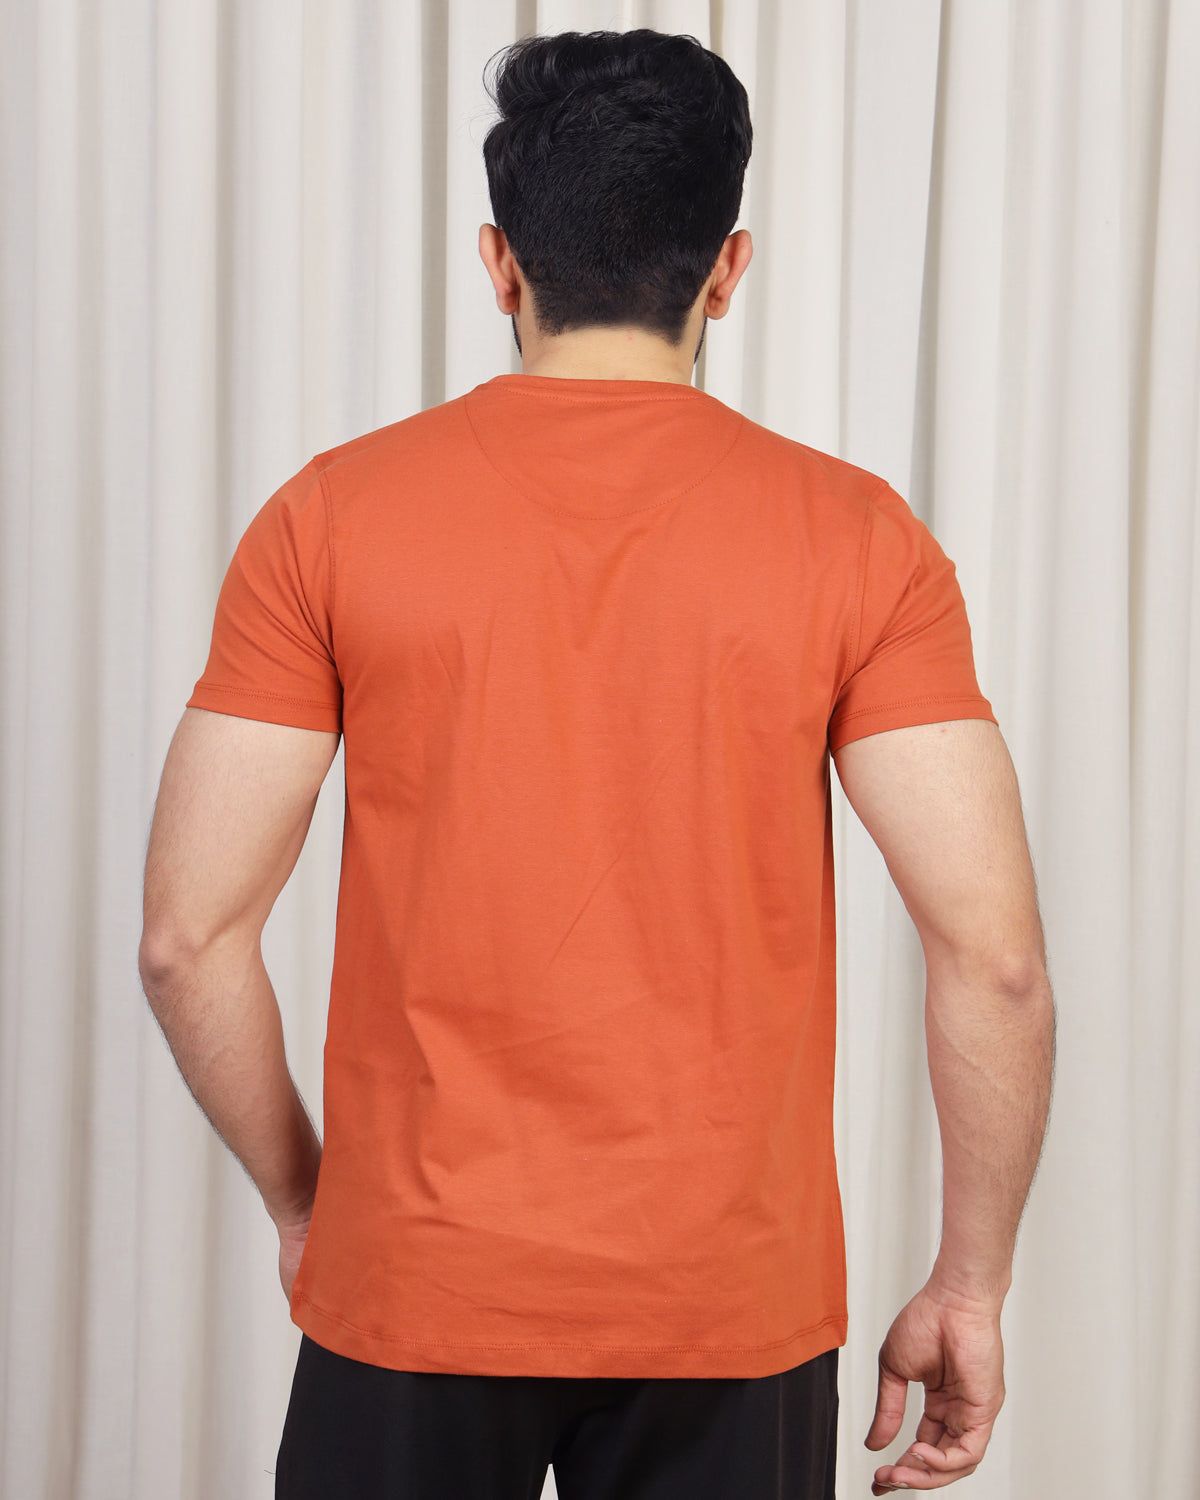    orange tshirt